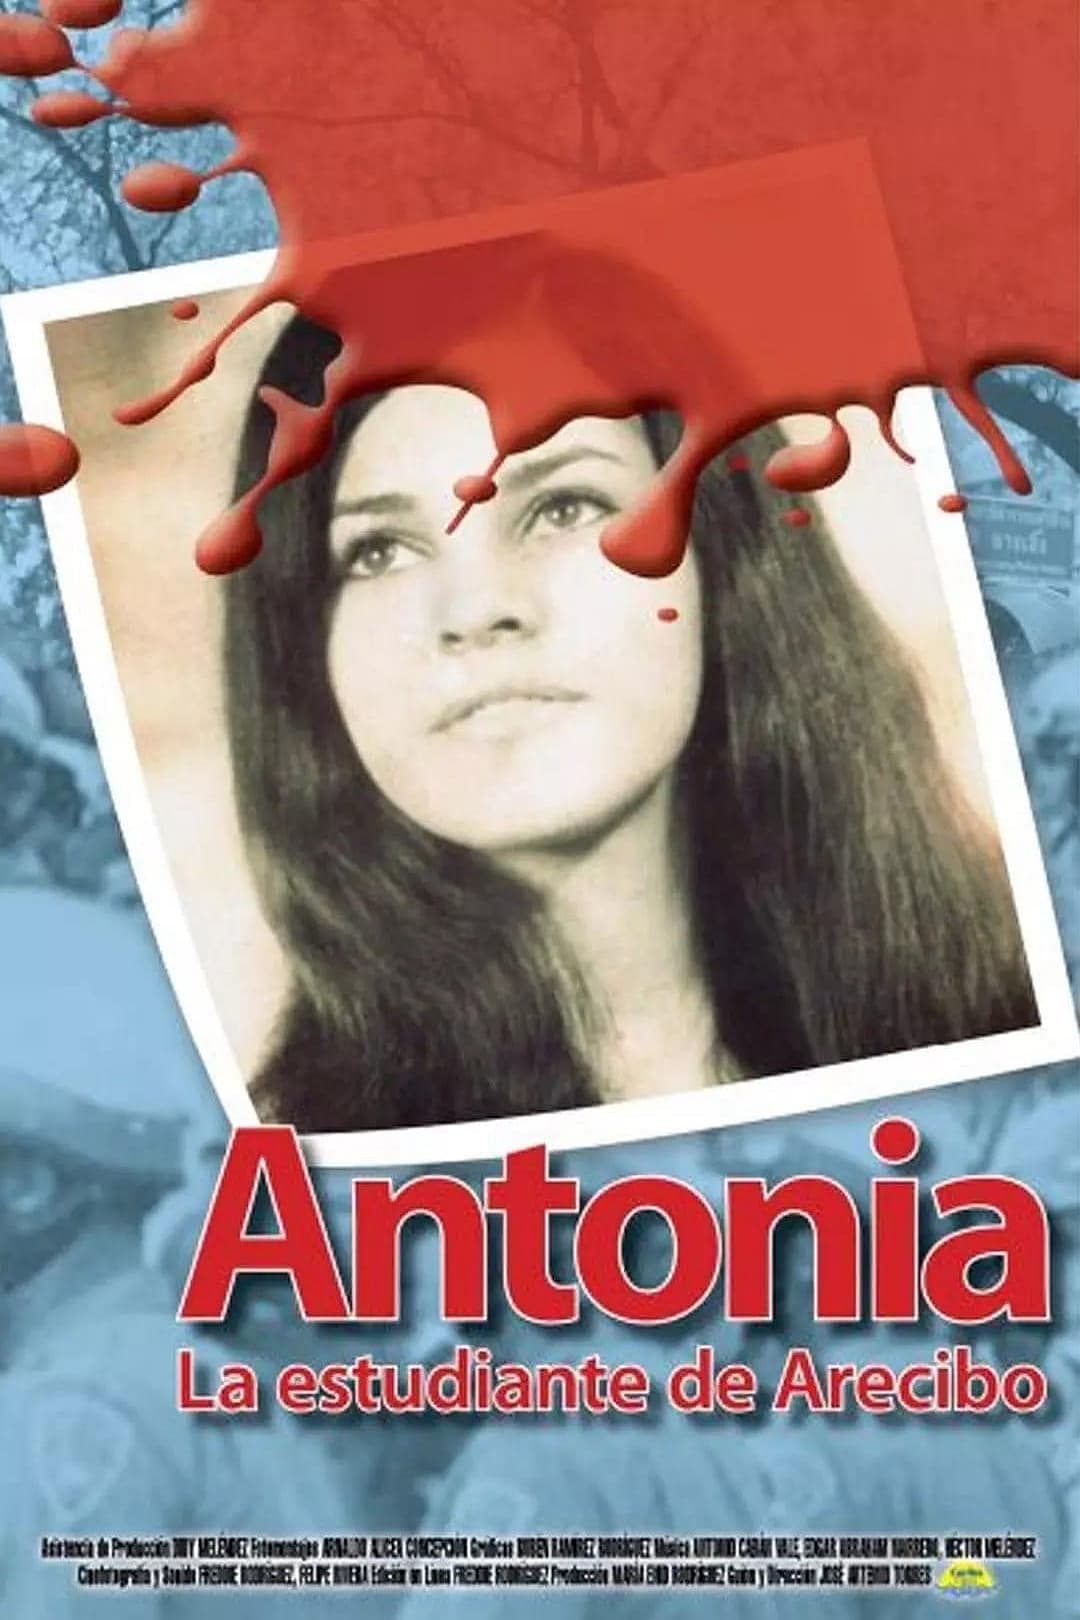 Antonia, la estudiante de Arecibo